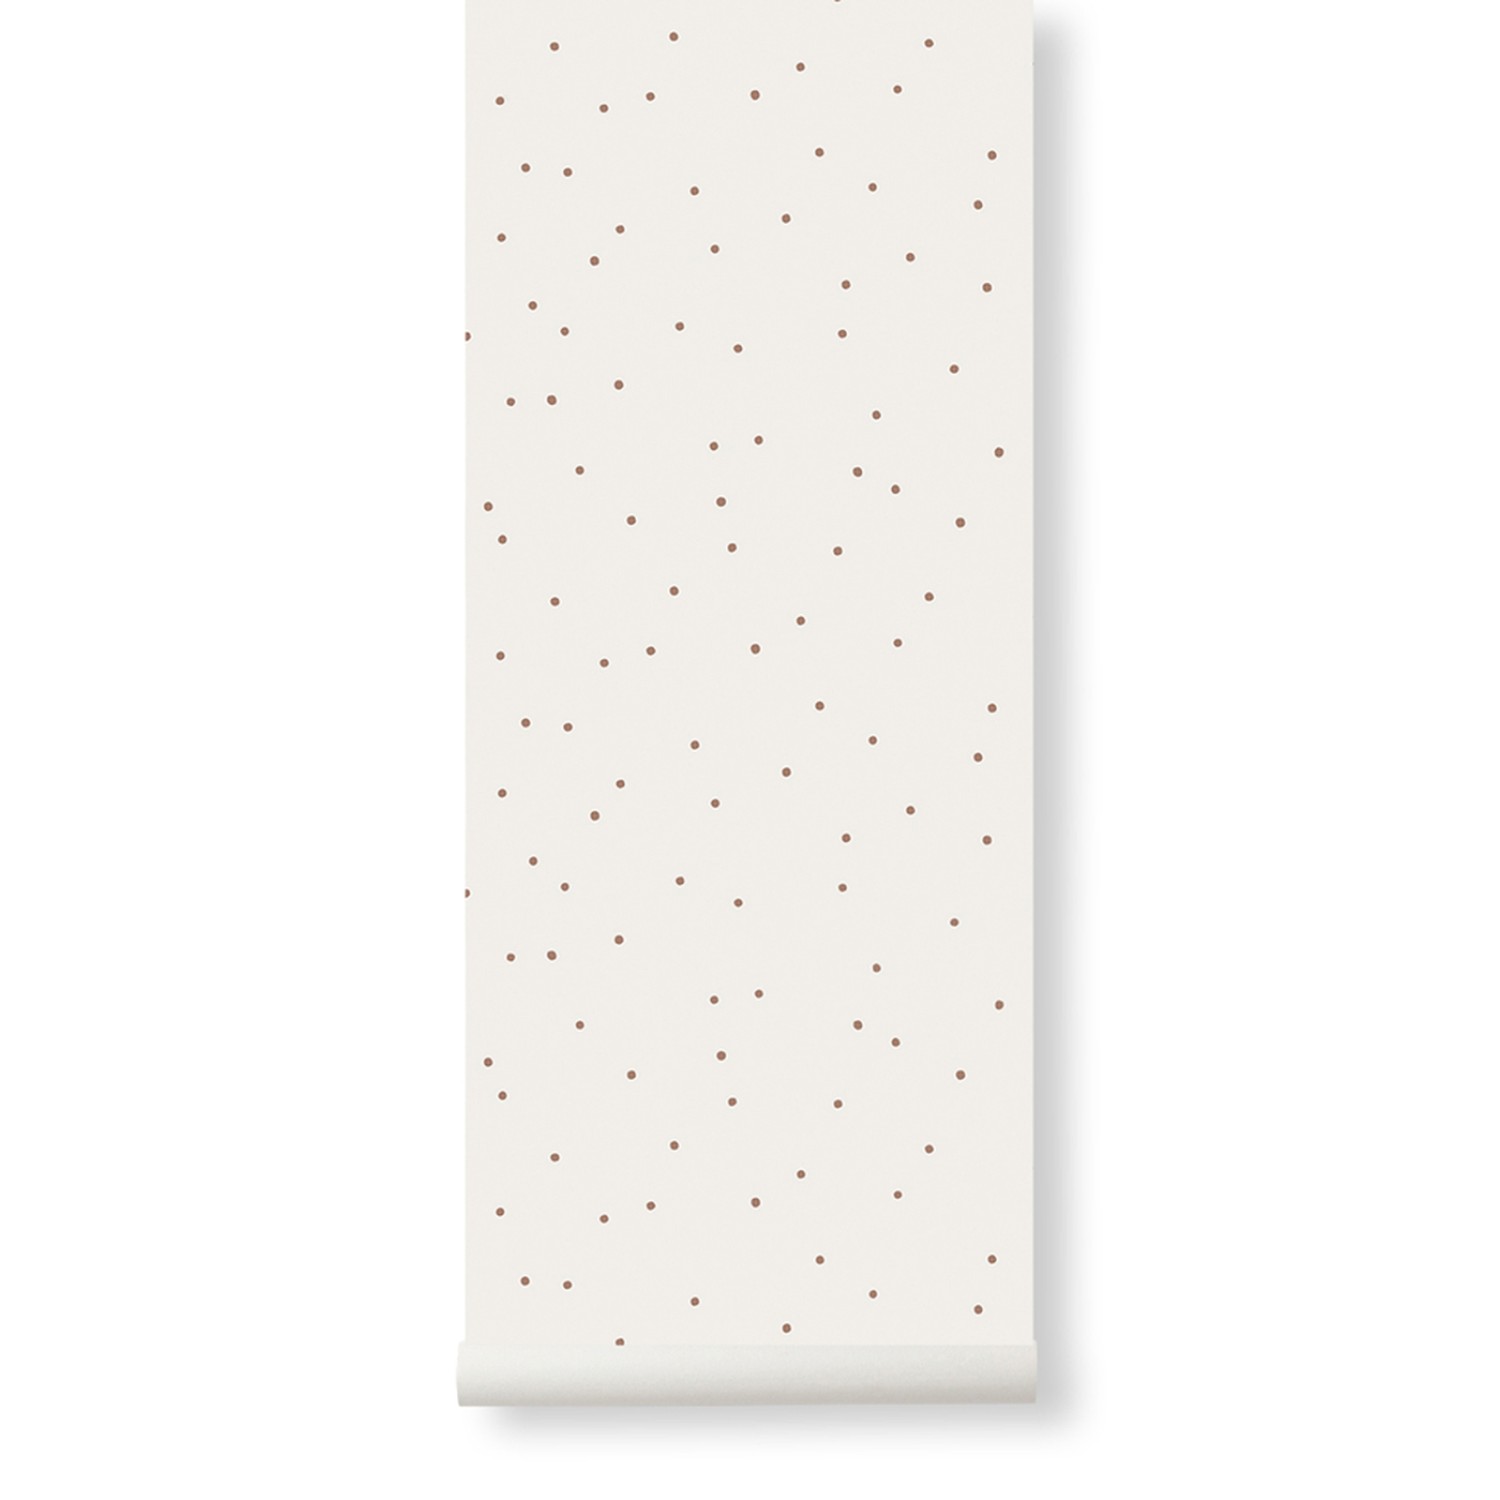 Dot Wallpaper
Off-White